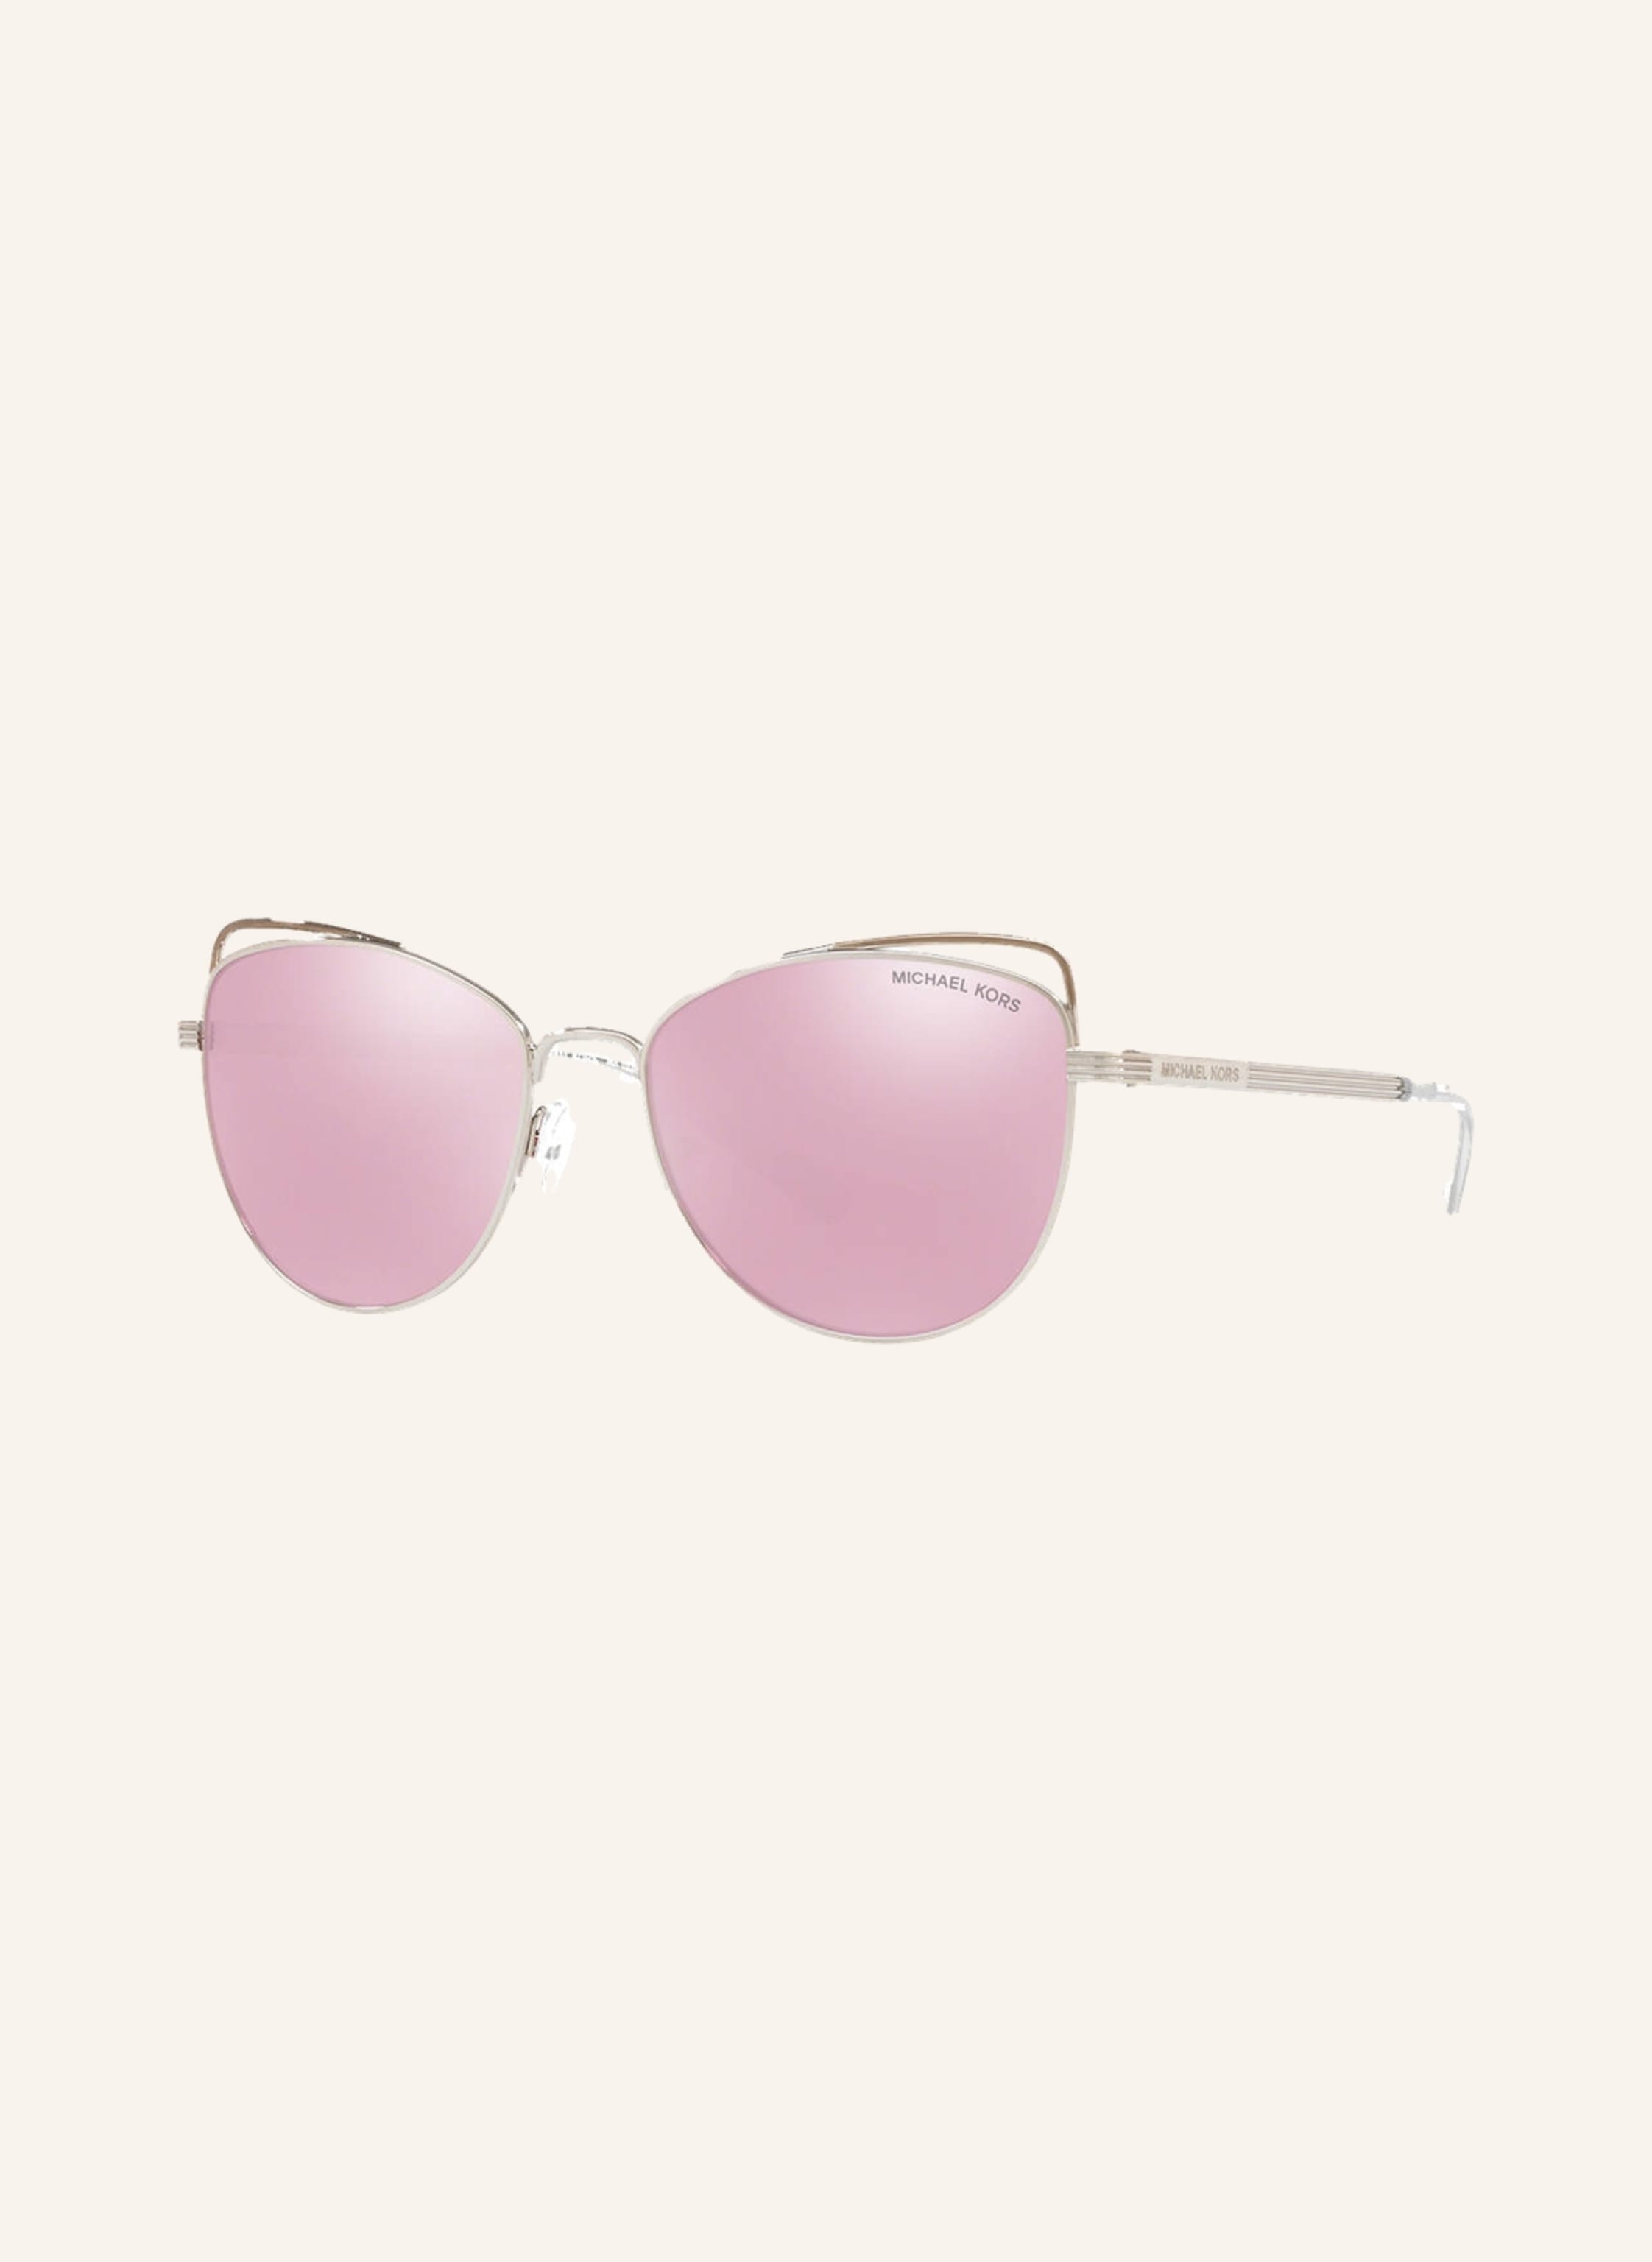 MICHAEL KORS Sunglasses MK1035 in 11537 v - silver/pink mirrored |  Breuninger